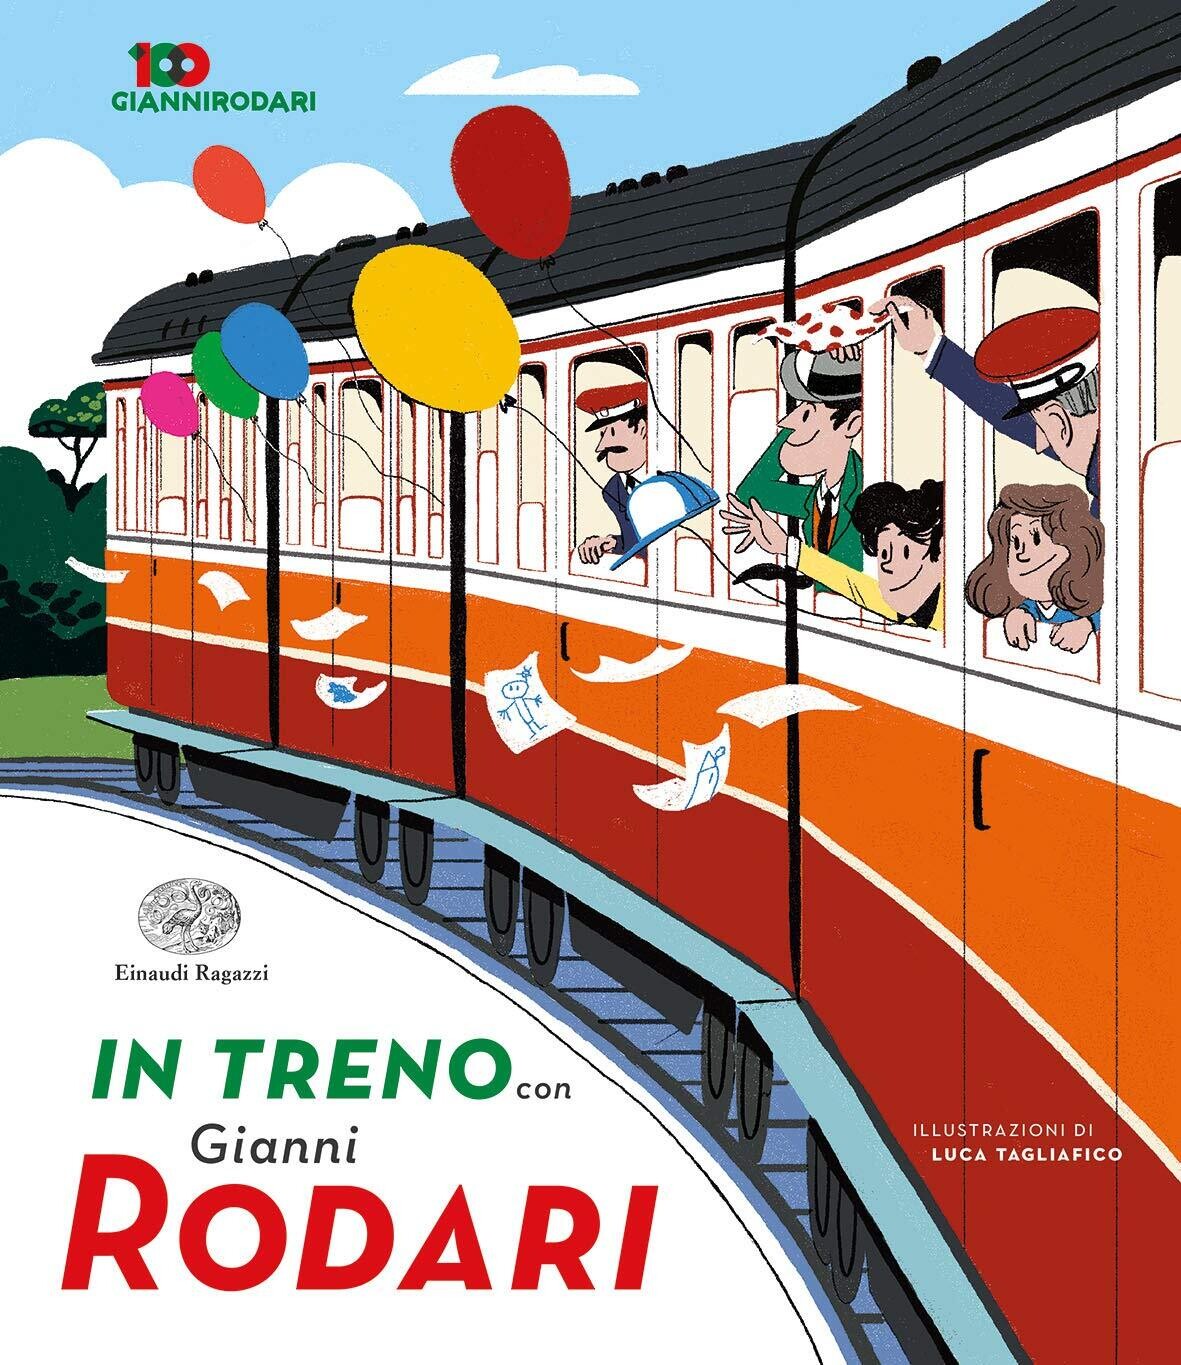 In treno con Gianni Rodari